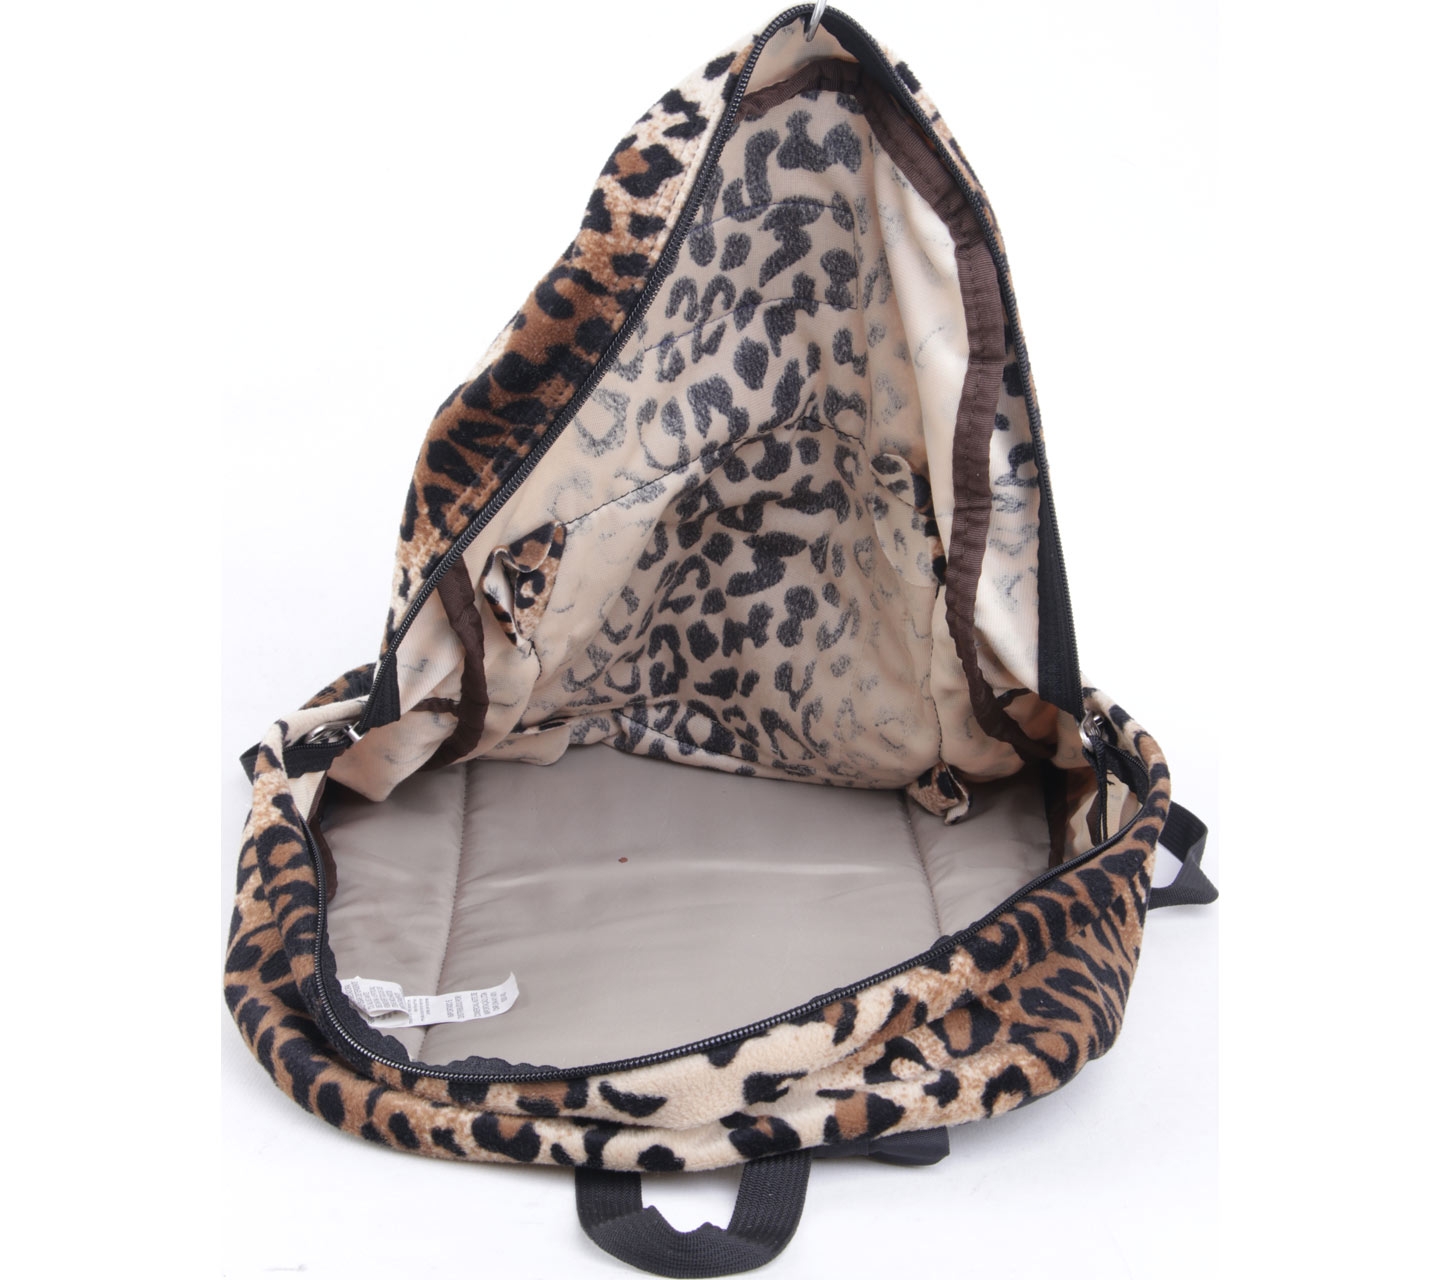 Jansport Black Leopard Backpack